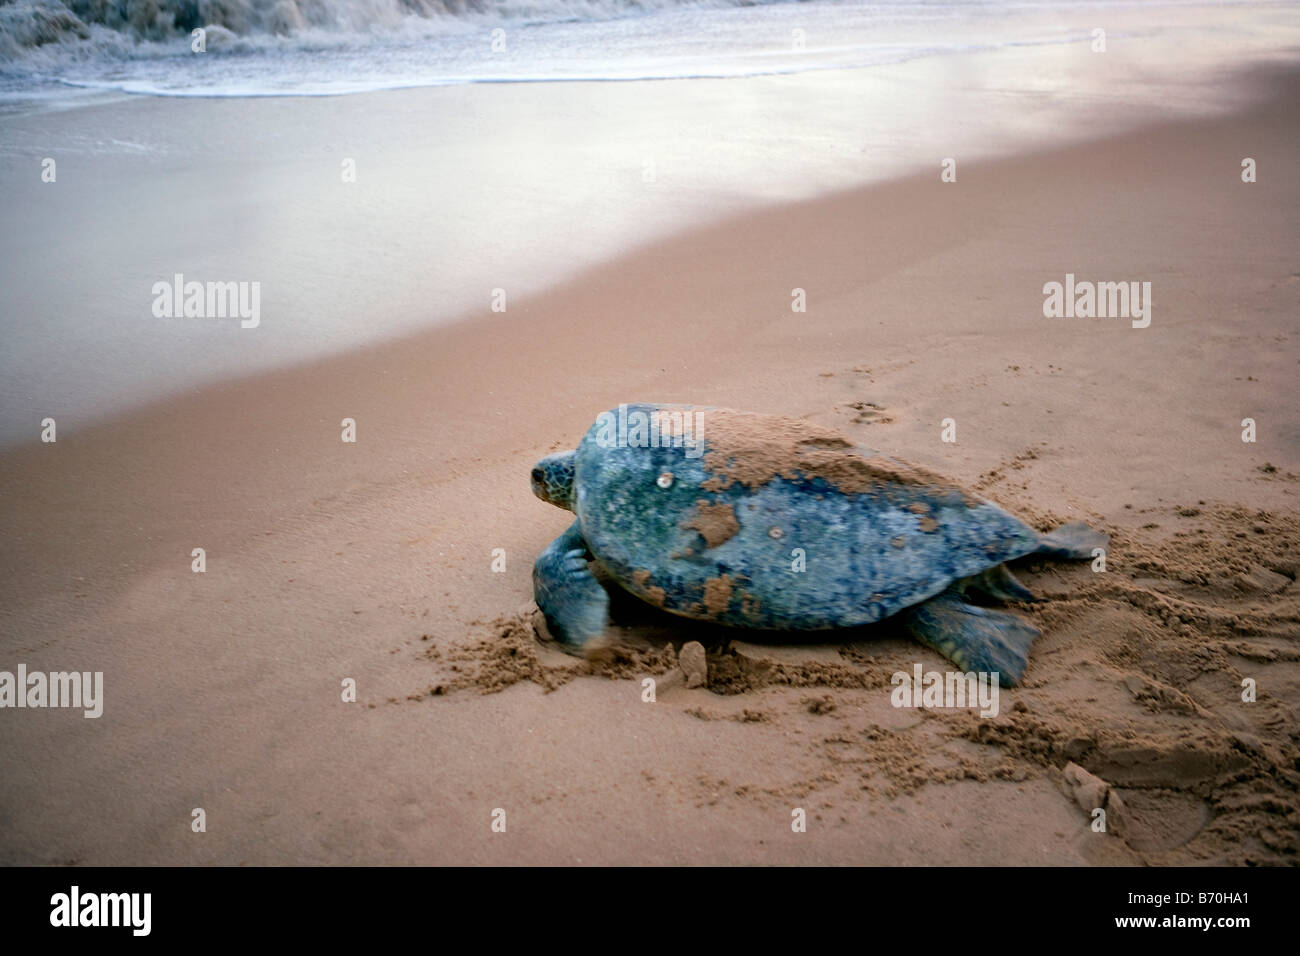 Suriname, Matapica National Park. La tortuga verde (Chelonia mydas) regresar al mar después de la puesta de los huevos. Foto de stock